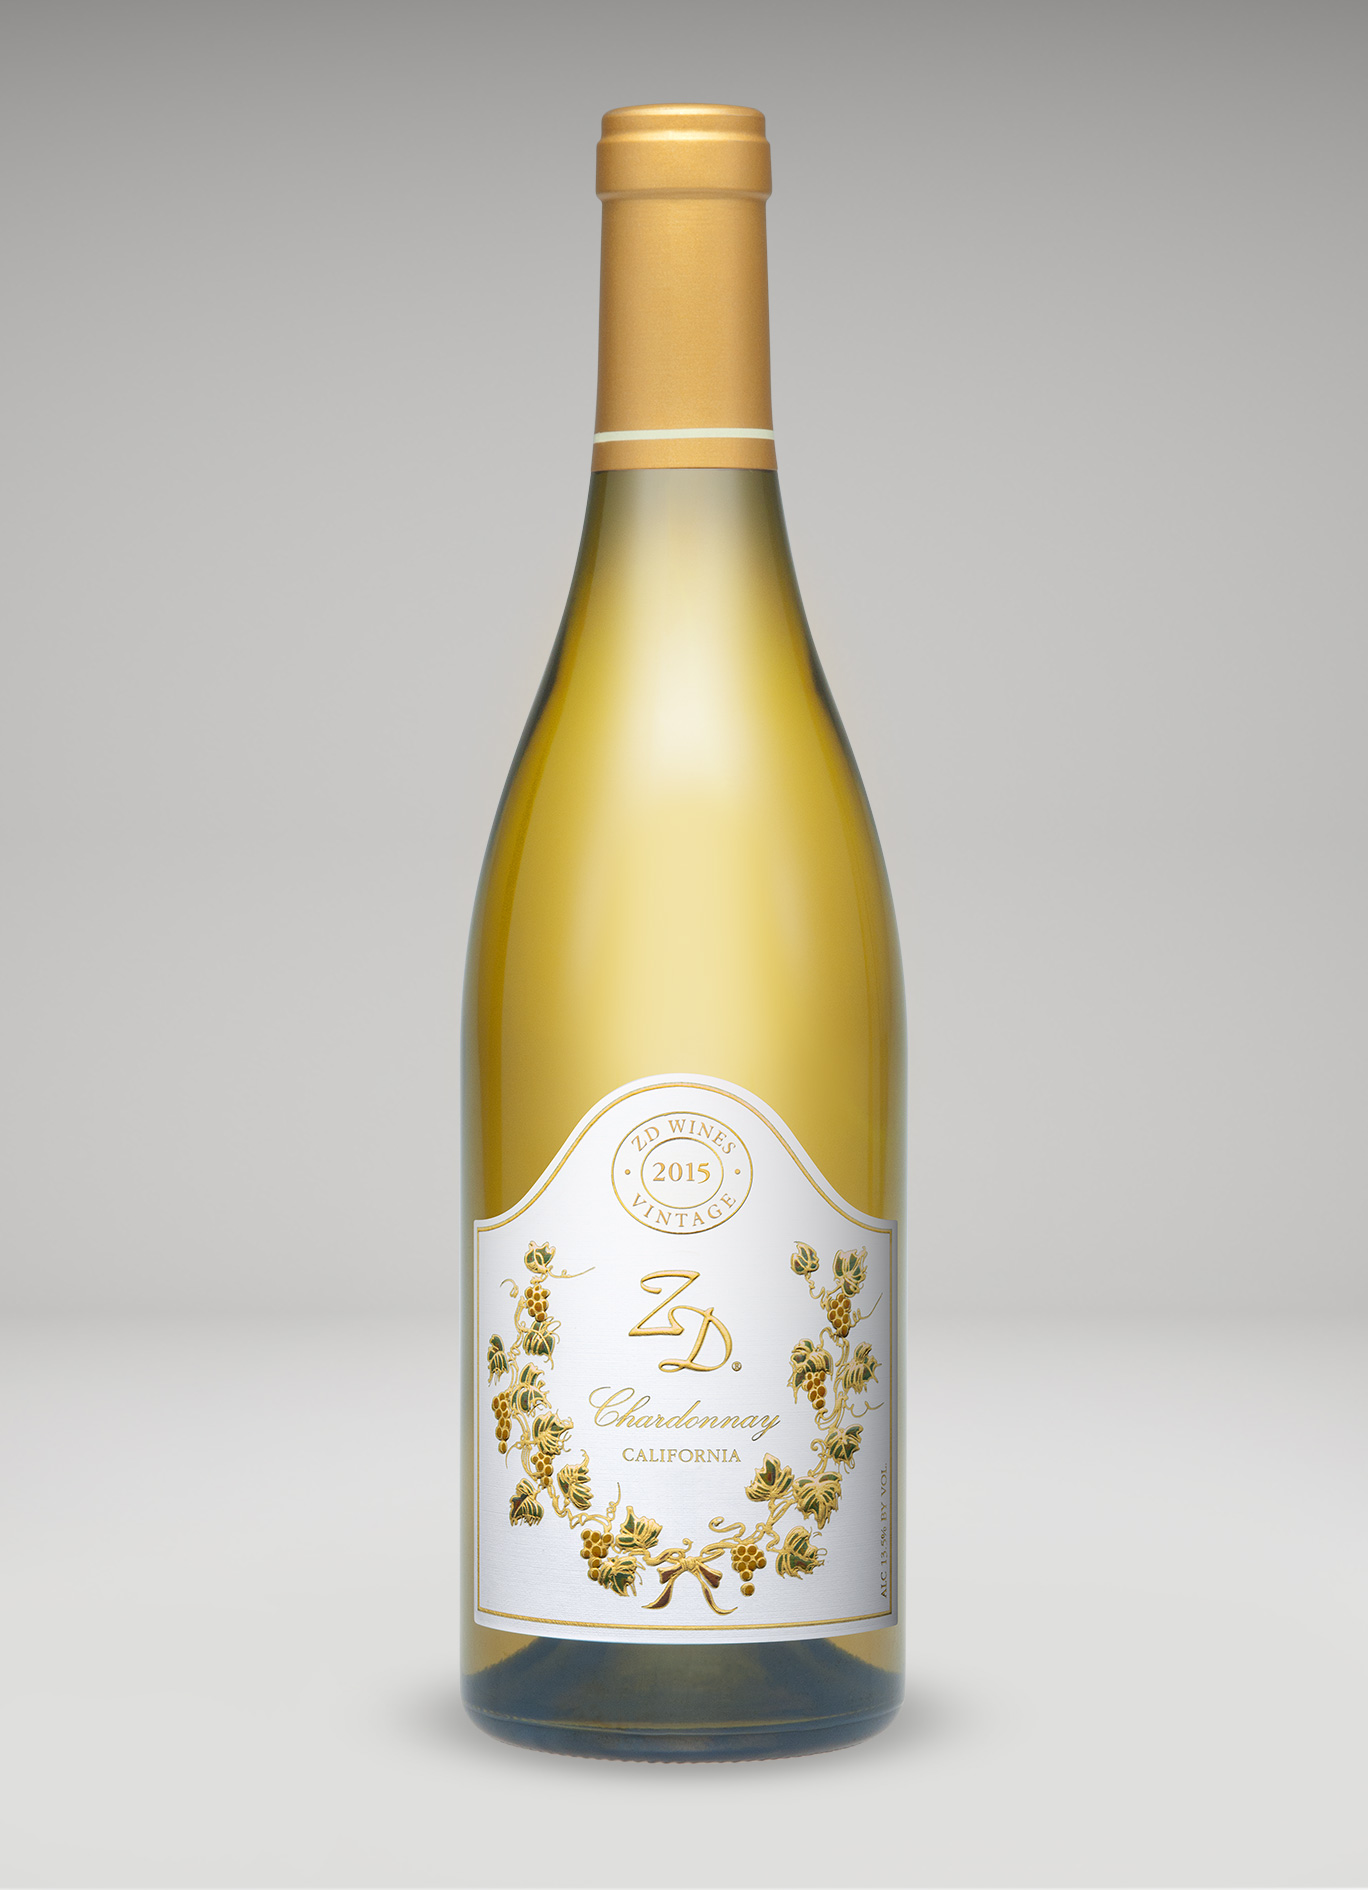 A bottle of 2015 ZD Chardonnay, CA